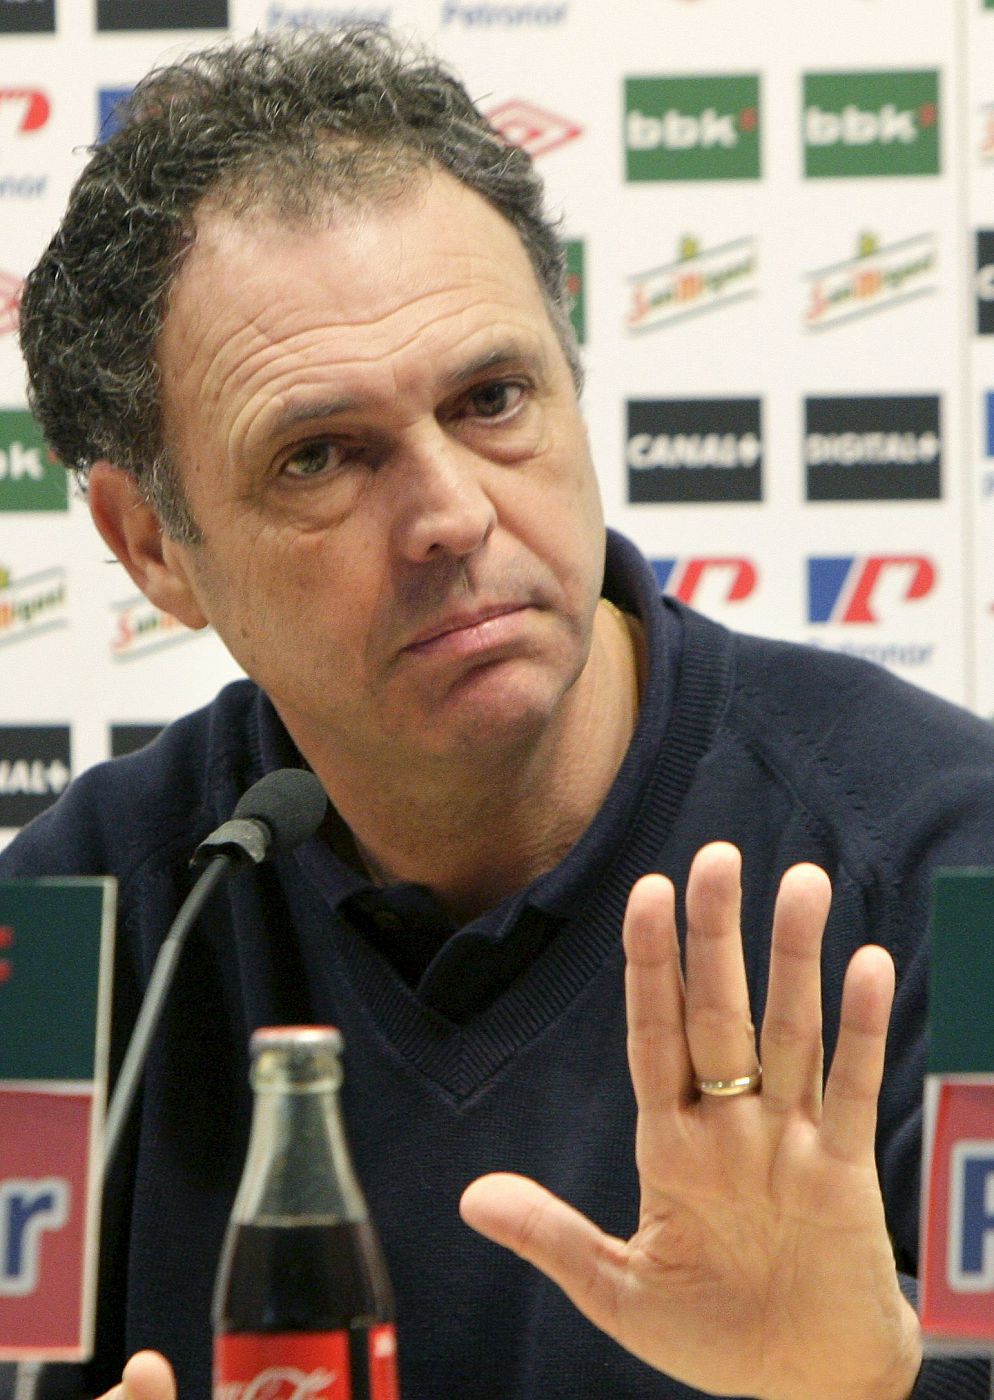 El entrenador del Athletic Club de Bilbao, Joaquín Caparrós, durante la rueda de prensa posterior al entrenamiento realizado en las instalaciones de Lezama.